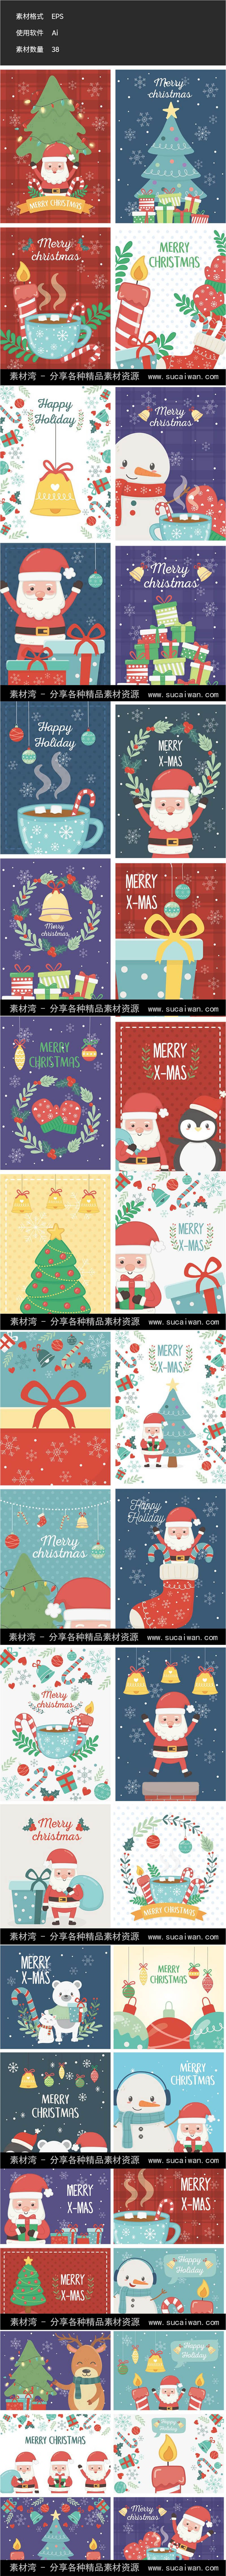 38款可爱卡通圣诞节矢量插画海报扁平圣诞老人AI矢量设计素材模板图片 设计素材 第1张